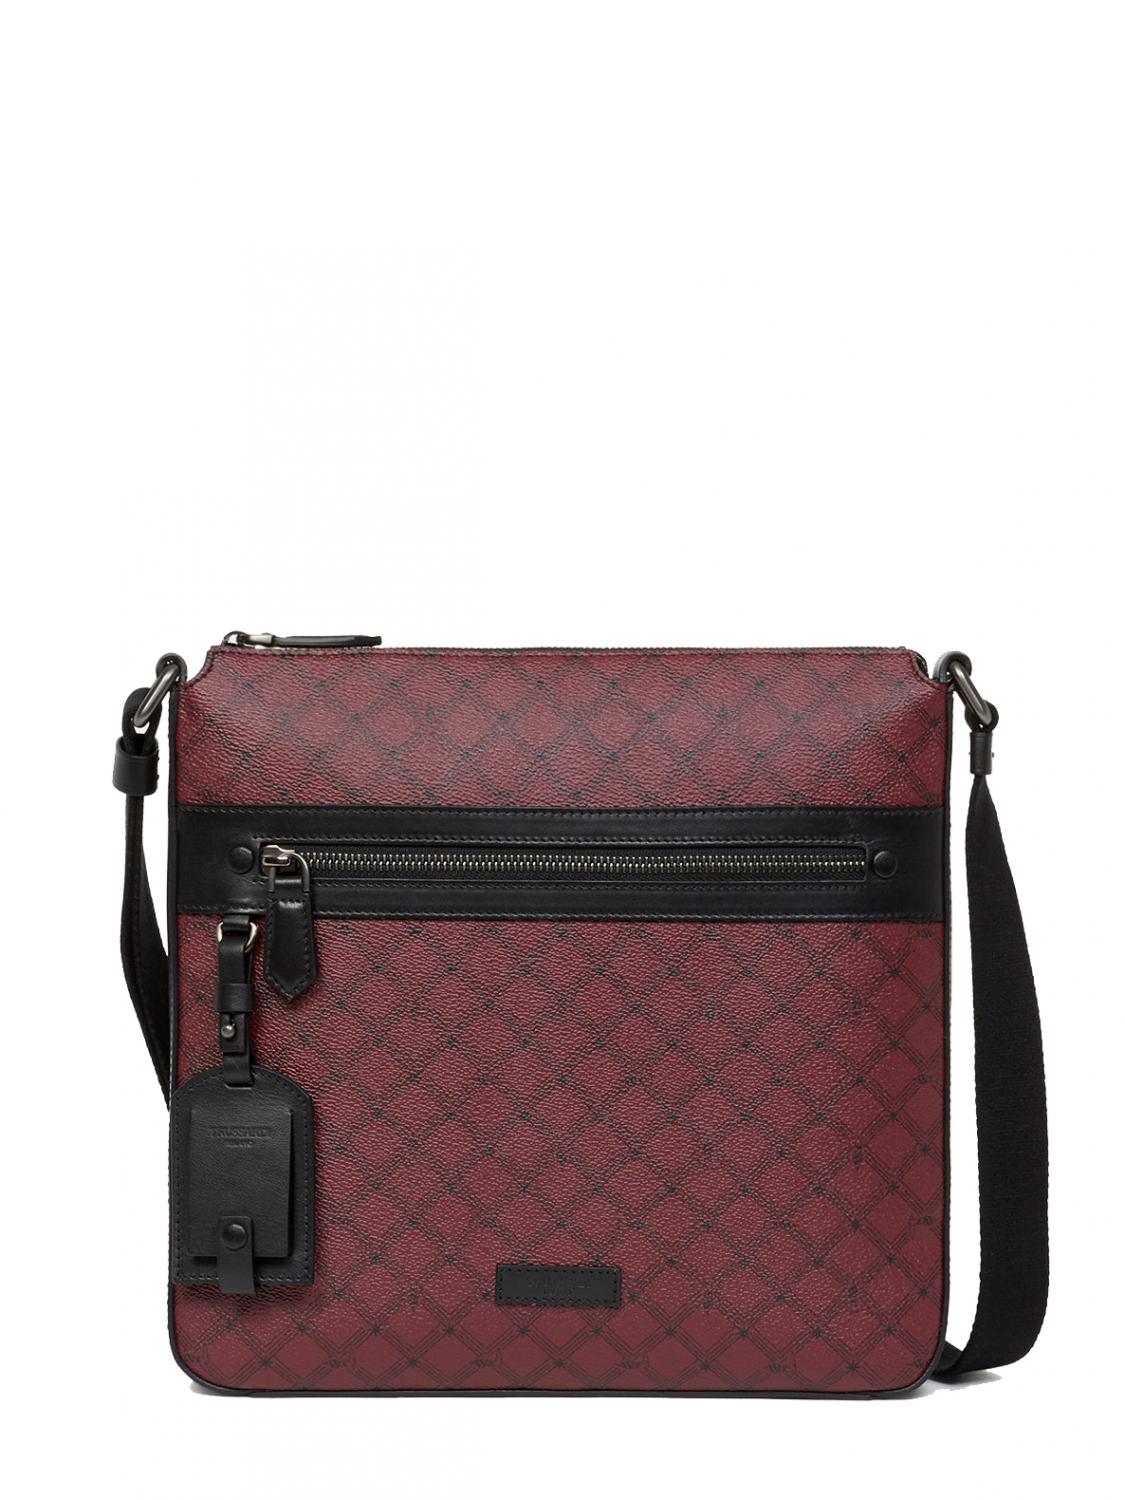 Trussardi Monogram Shoulder Bag Red / Black - Buy At Outlet Prices!